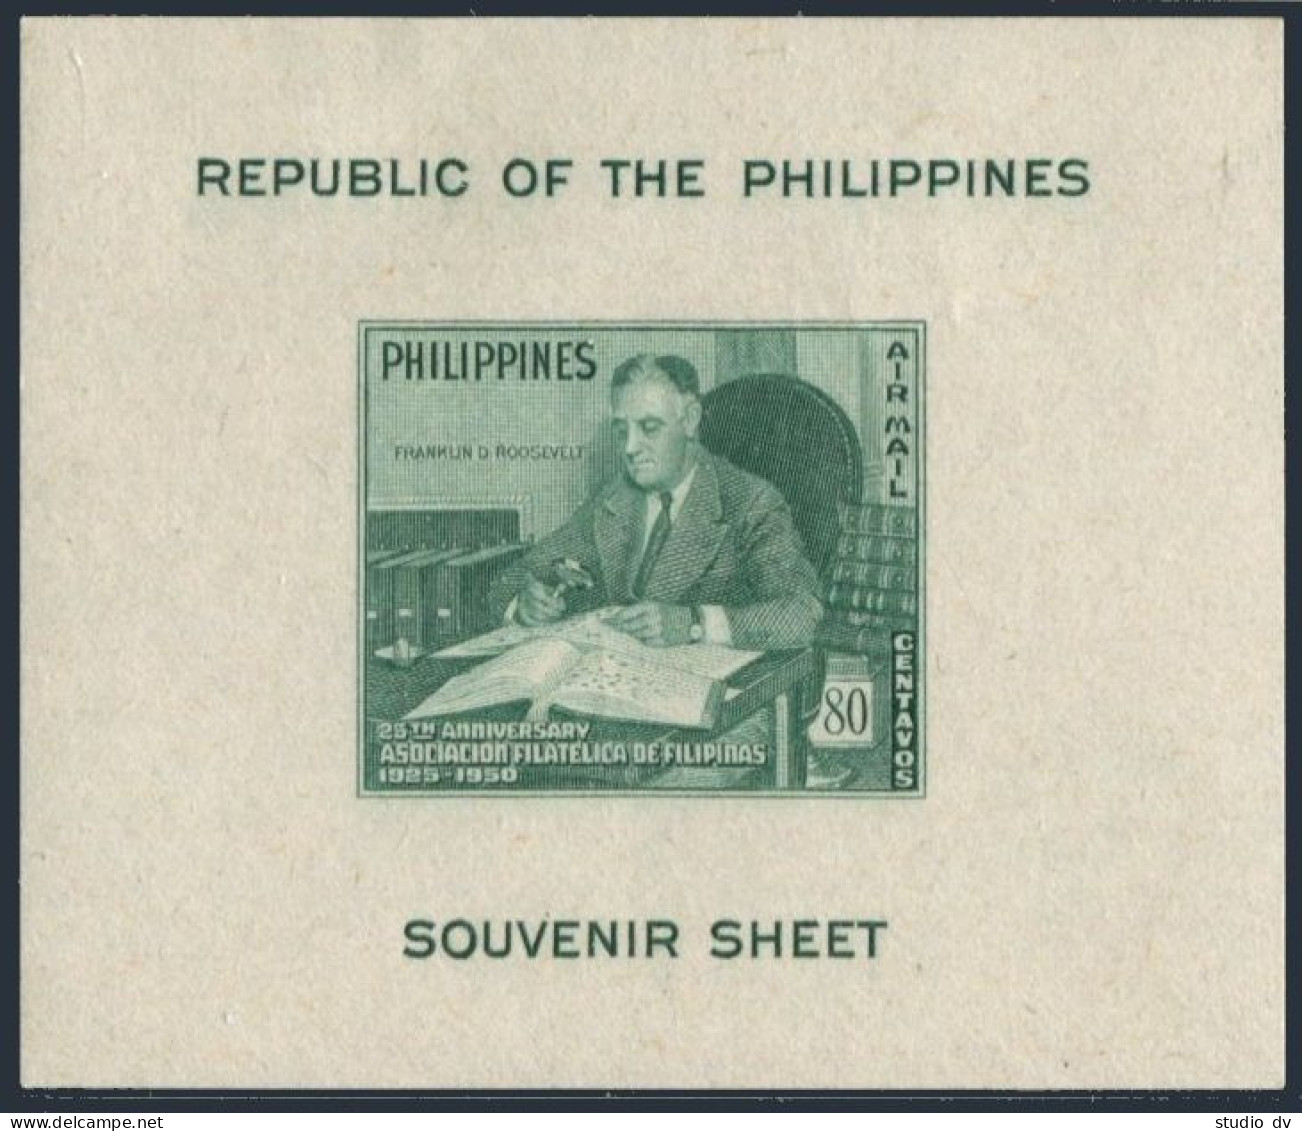 Philippines 542-544, C70, MNH. Michel 508-510, Bl.3. Franklin D.Roosevelt, 1950. - Philippinen